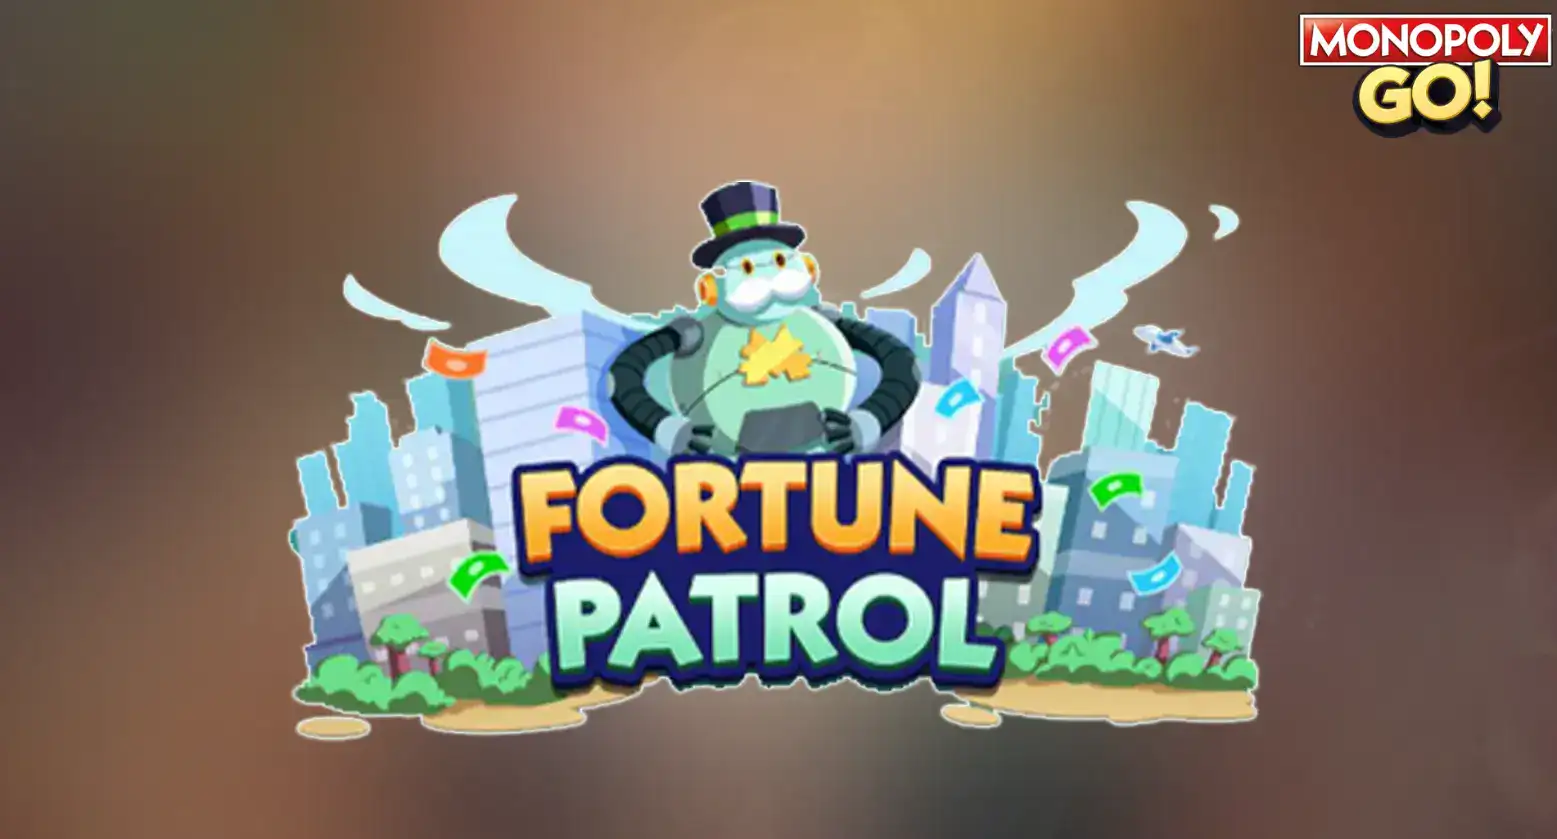 fortune patrol rewards and milestones